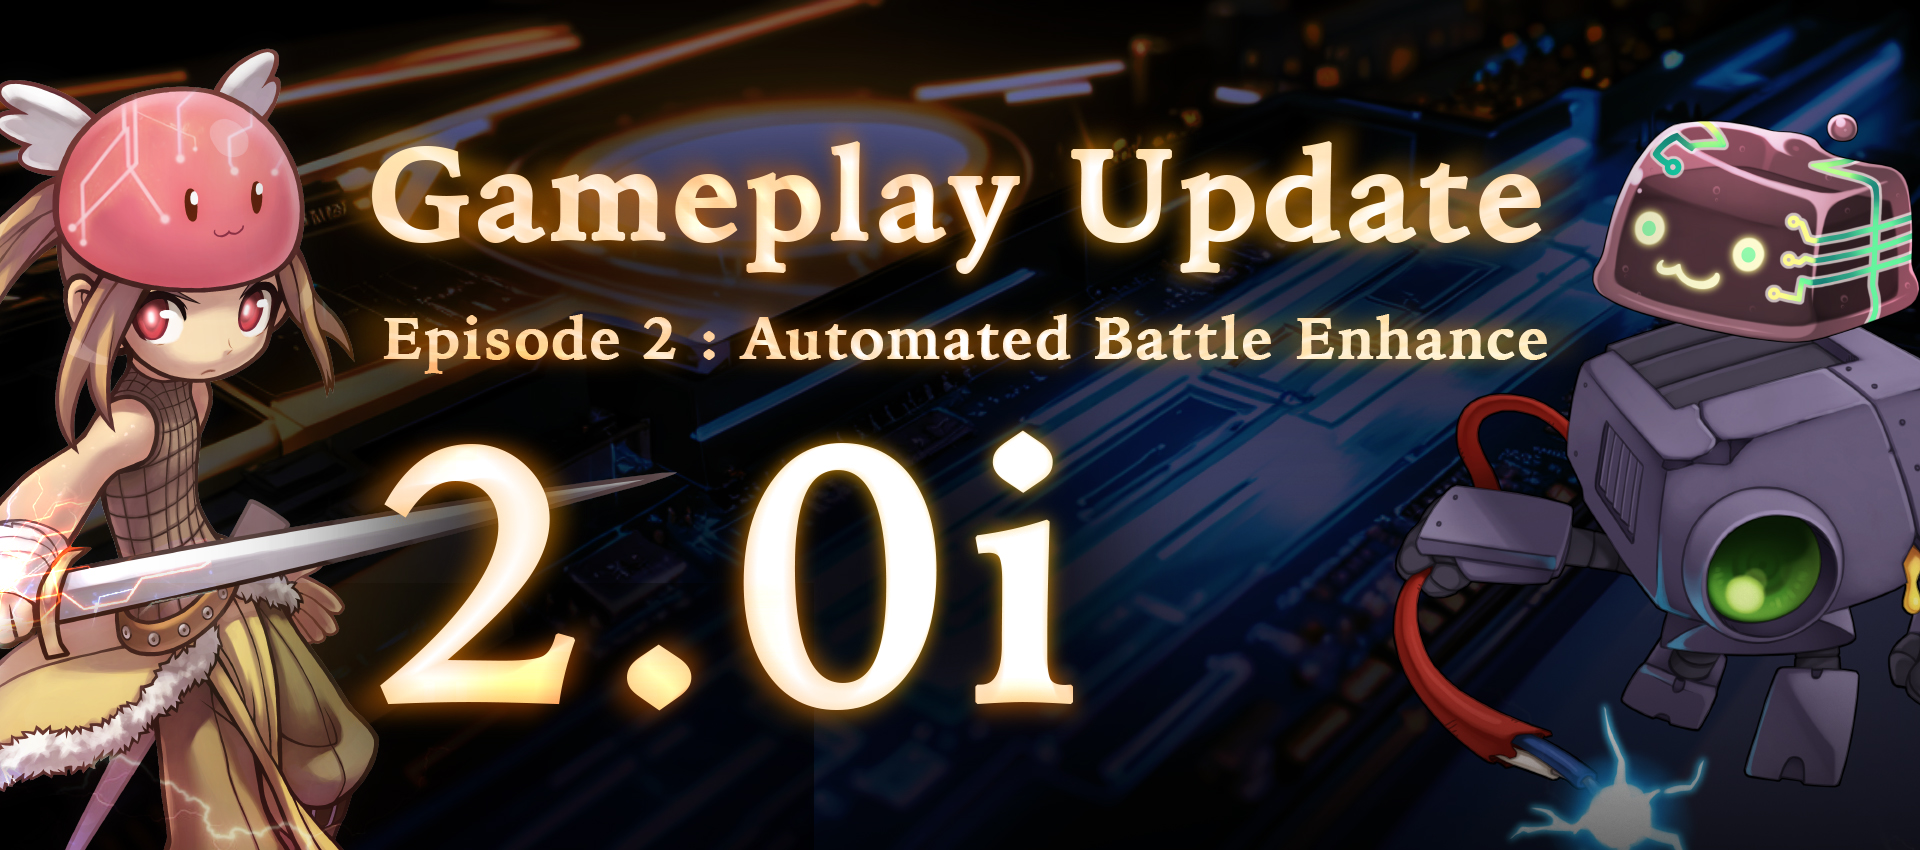 Gameplay Update 2.0i : Automated Battle Enhance